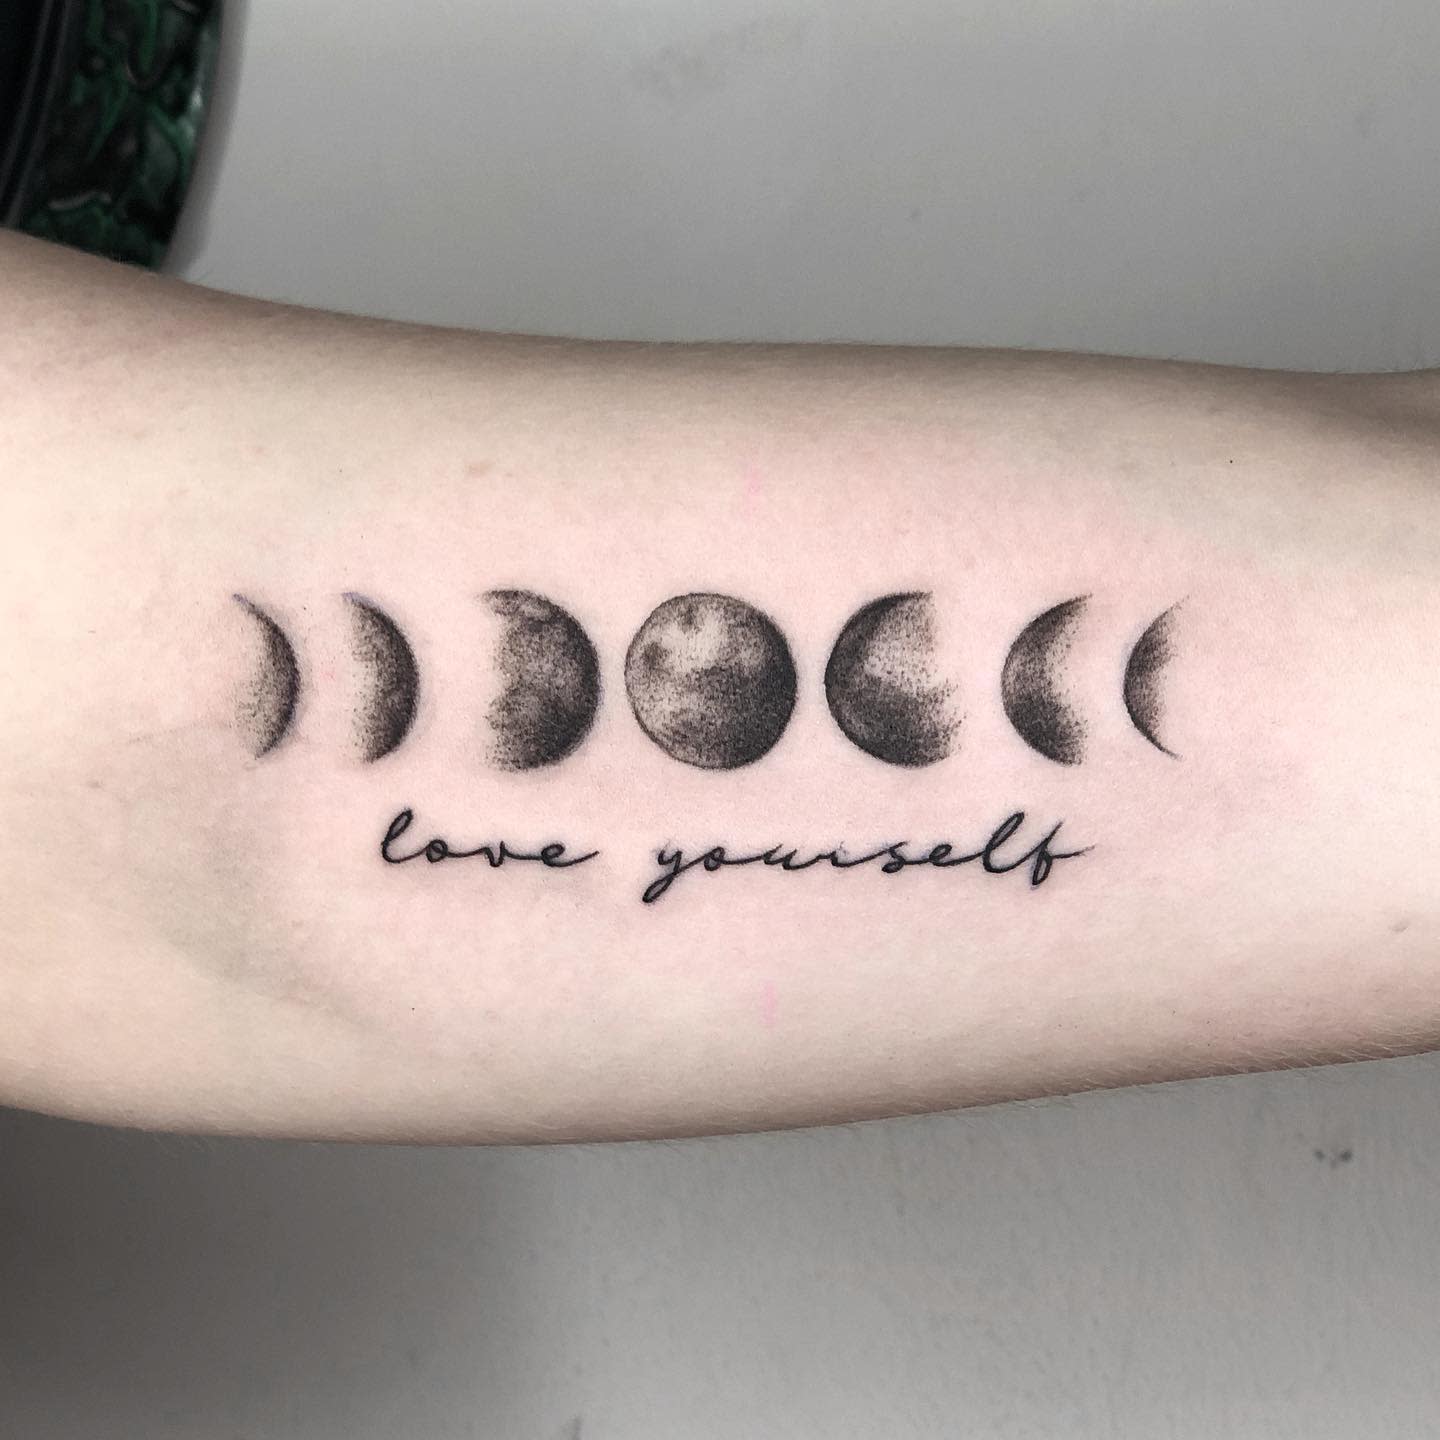 Self Love Yourself Tattoo -tattoo.jordiart